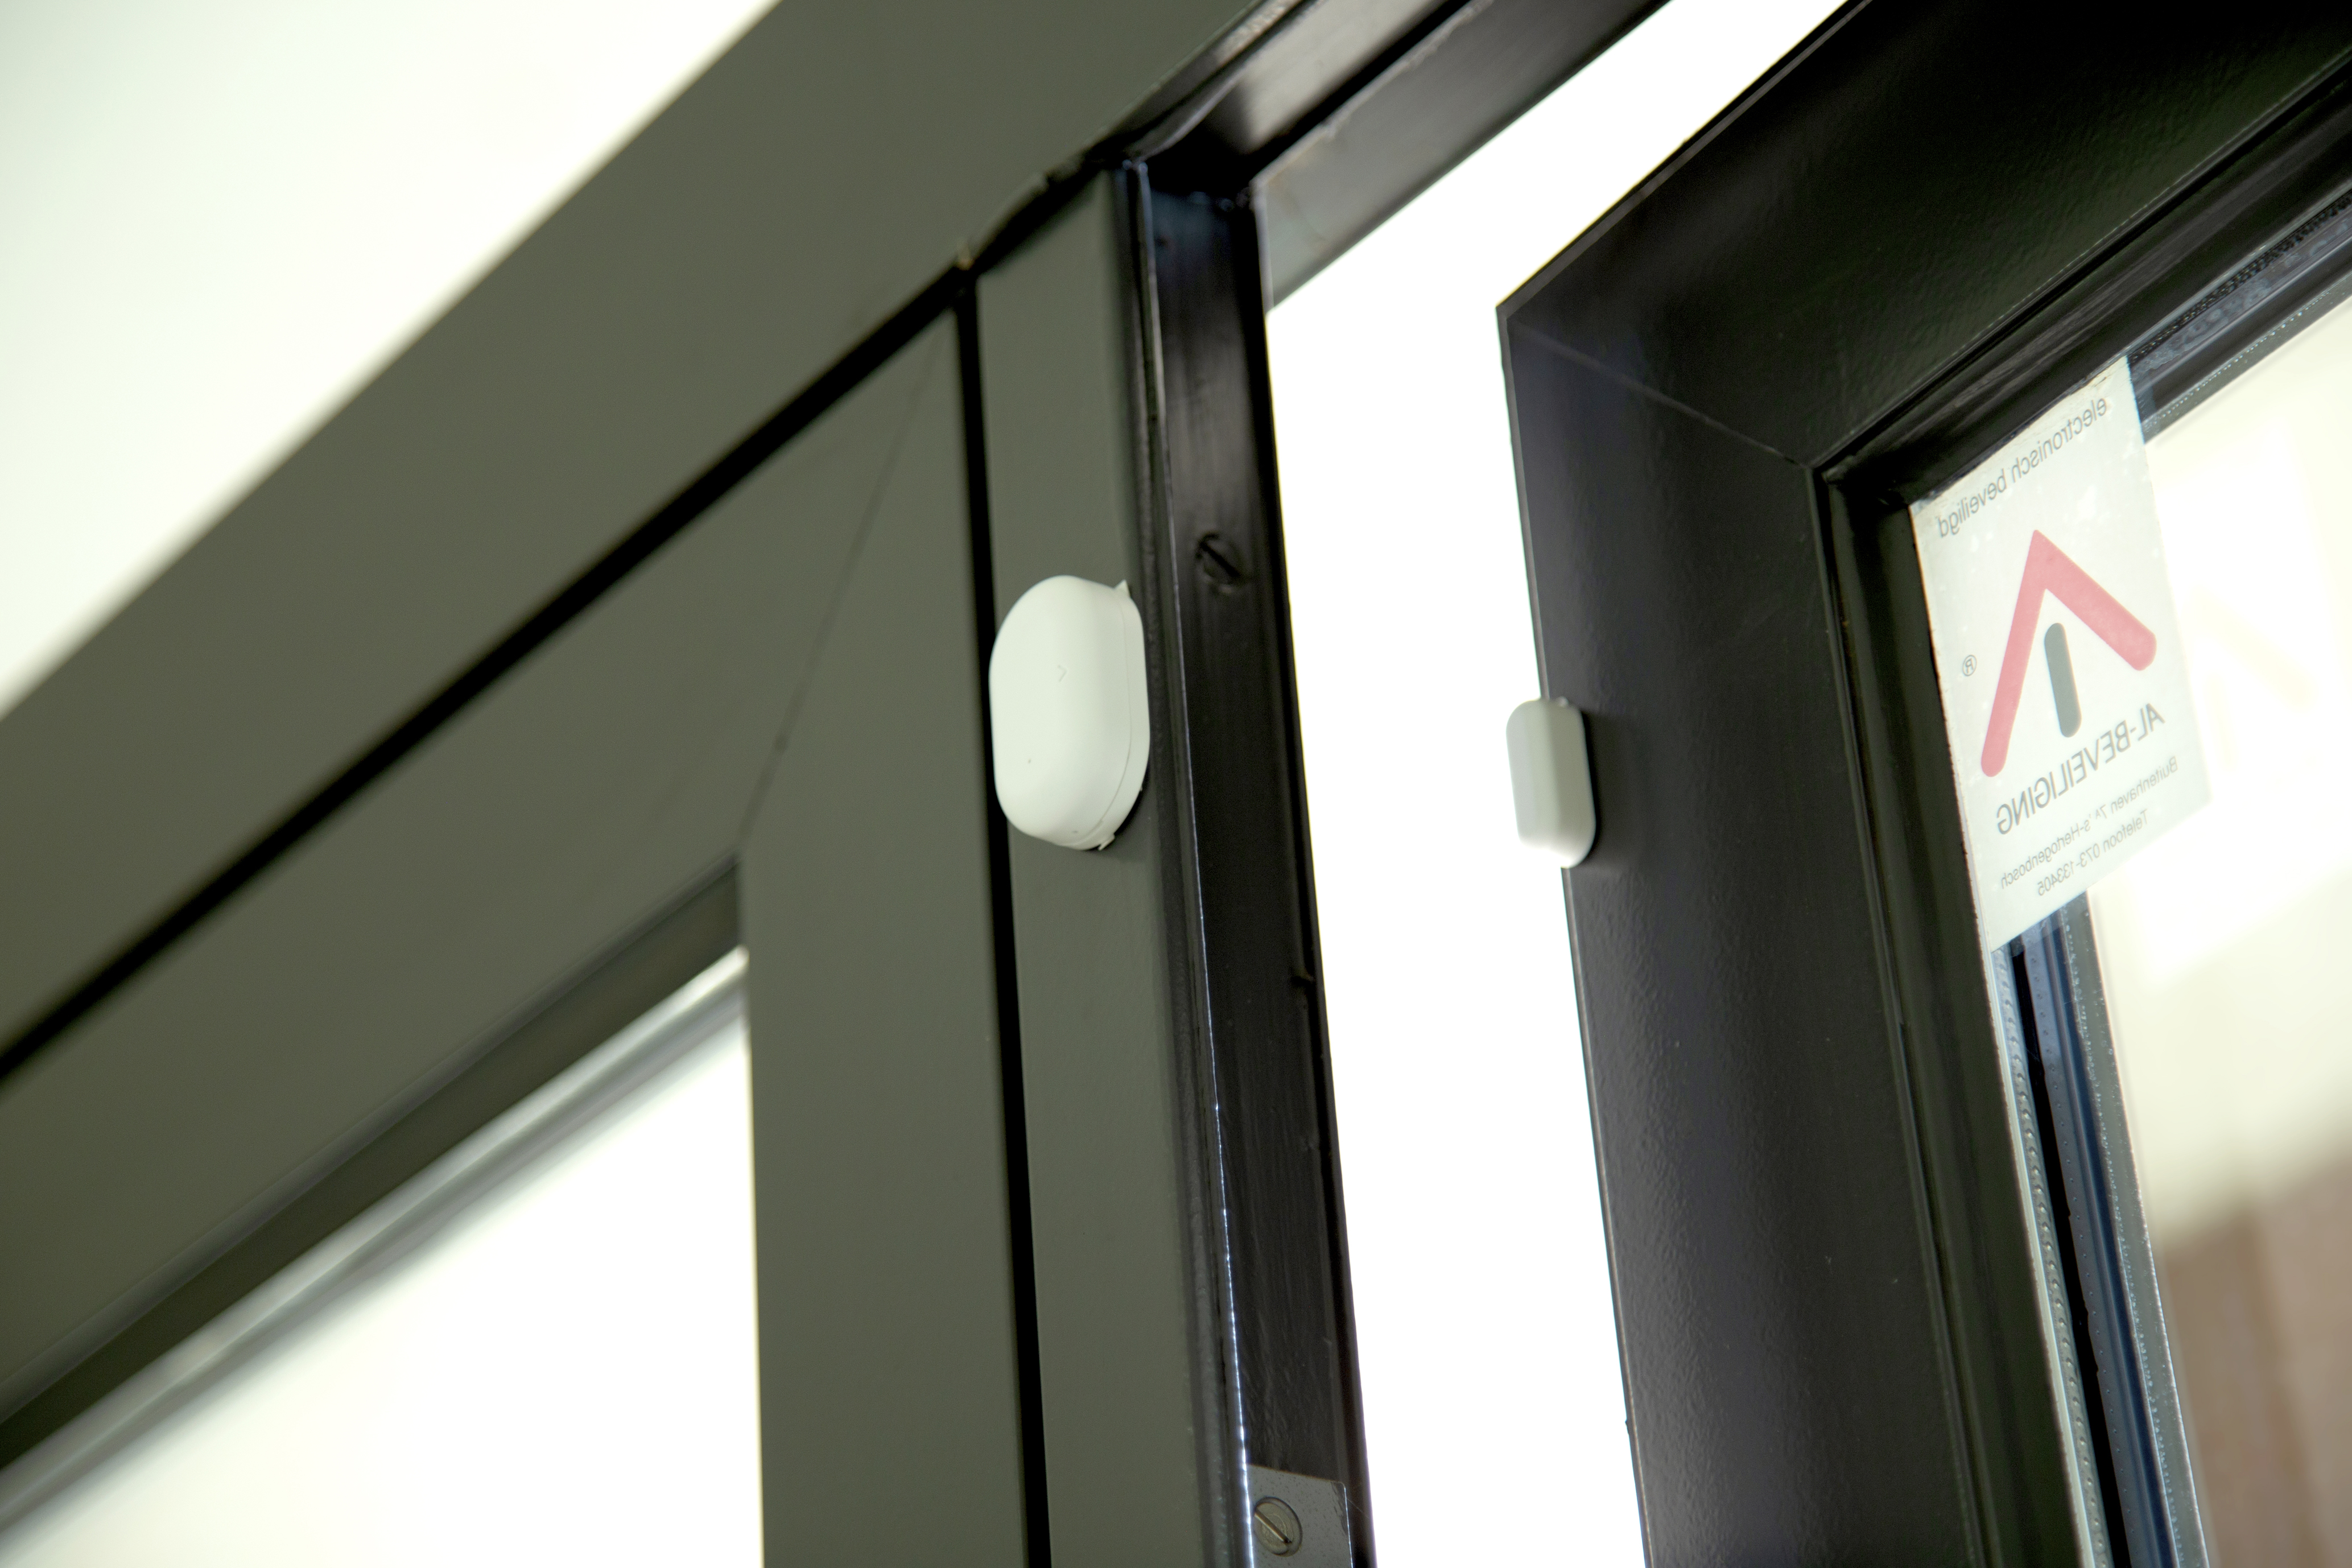 Smarter Hausautomatisierung - zur Bewegungsmelder ZigBee - Weiß SMART-DOOR10 Fenster-/Türsensor ALECTO